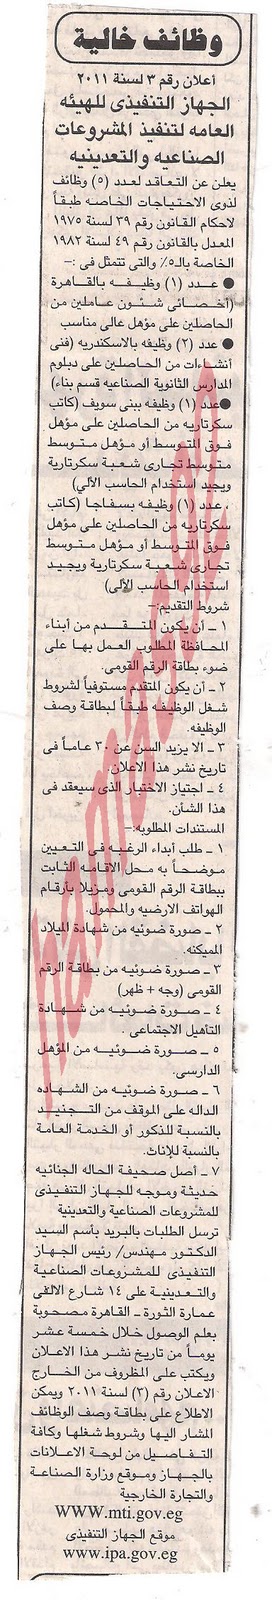 وظائف جميع الصحف المصرية الخميس 6/10/2011 Picture+002